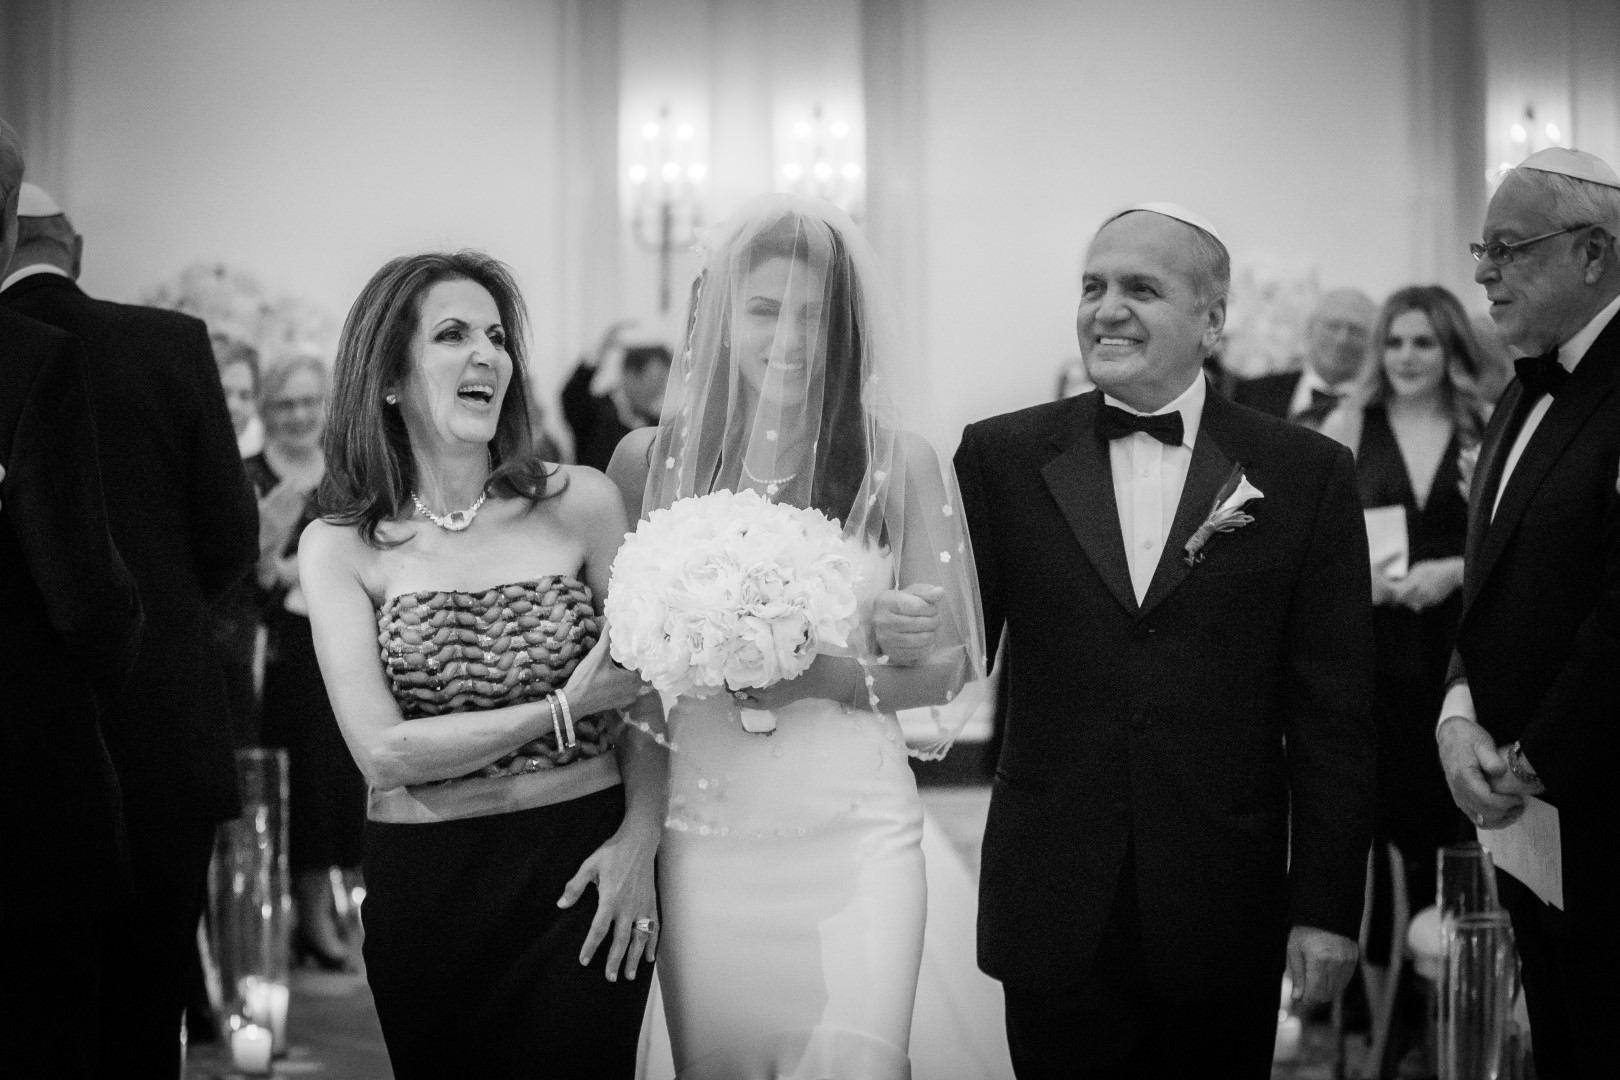 new york city artistic beautiful art wedding photography photographer photo groom bride emotional ketubah ceremony signing jewish parents celebrating mazel tov